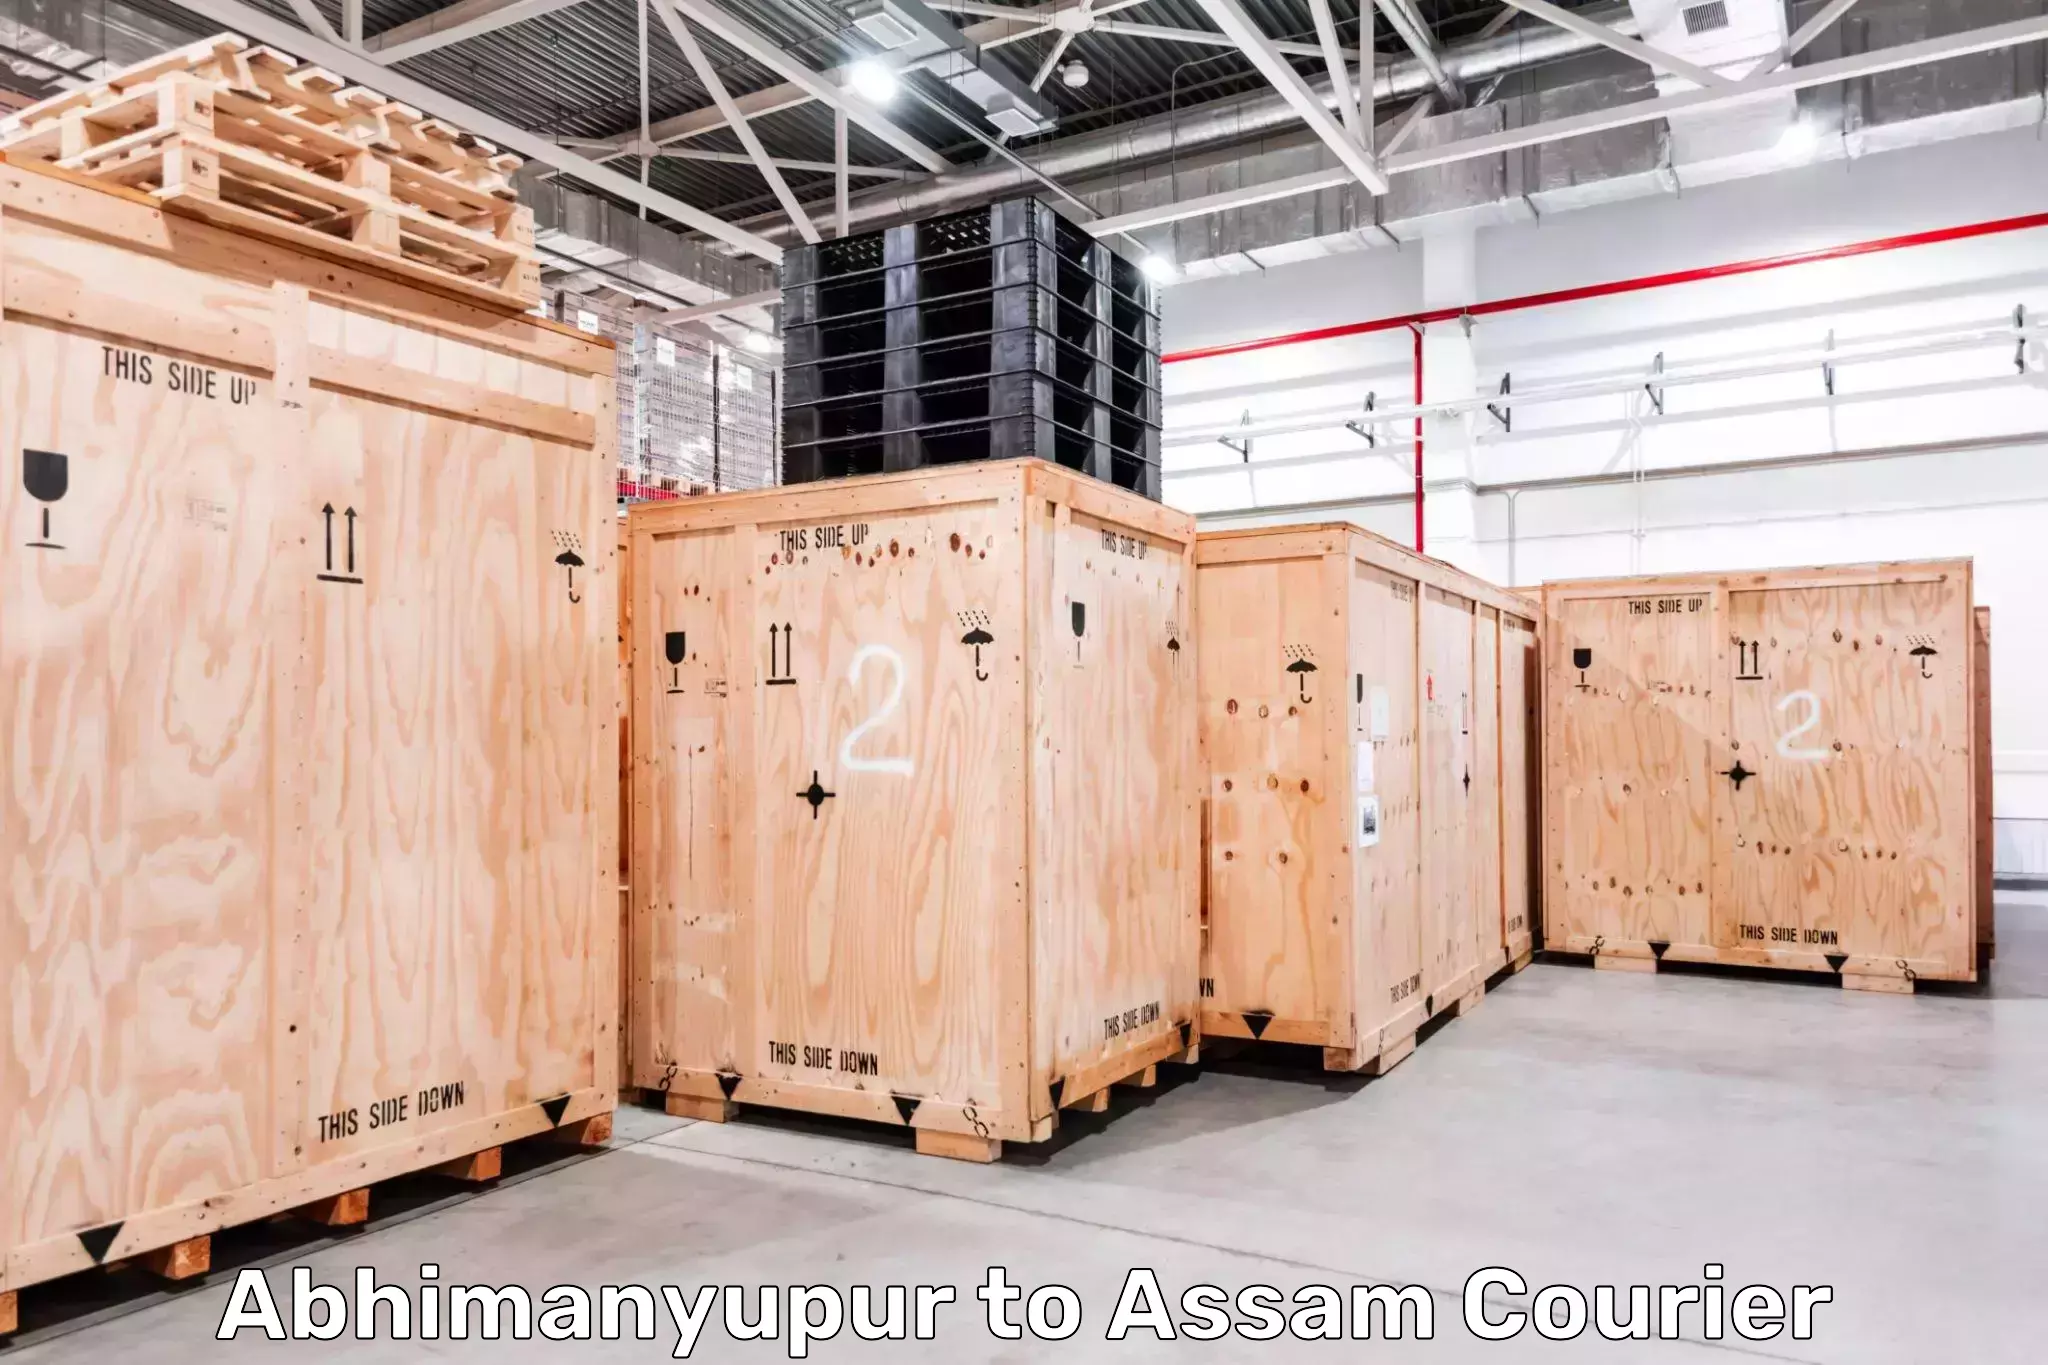 Flexible parcel services Abhimanyupur to Assam